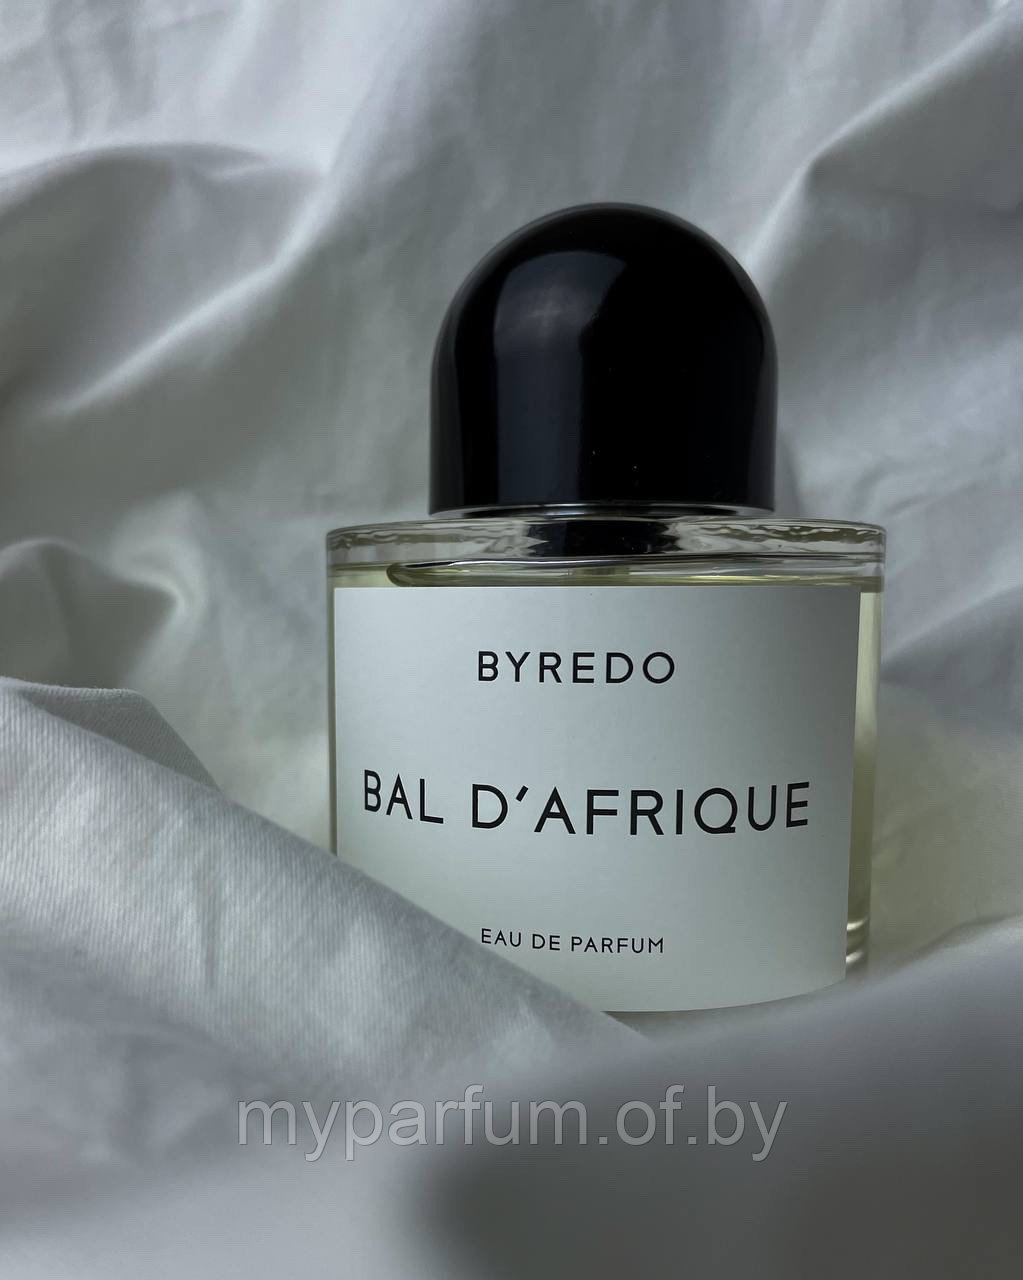 Унисекс парфюмированная вода Byredo Bal d’Afrique edp 5ml (ORIGINAL) отливант